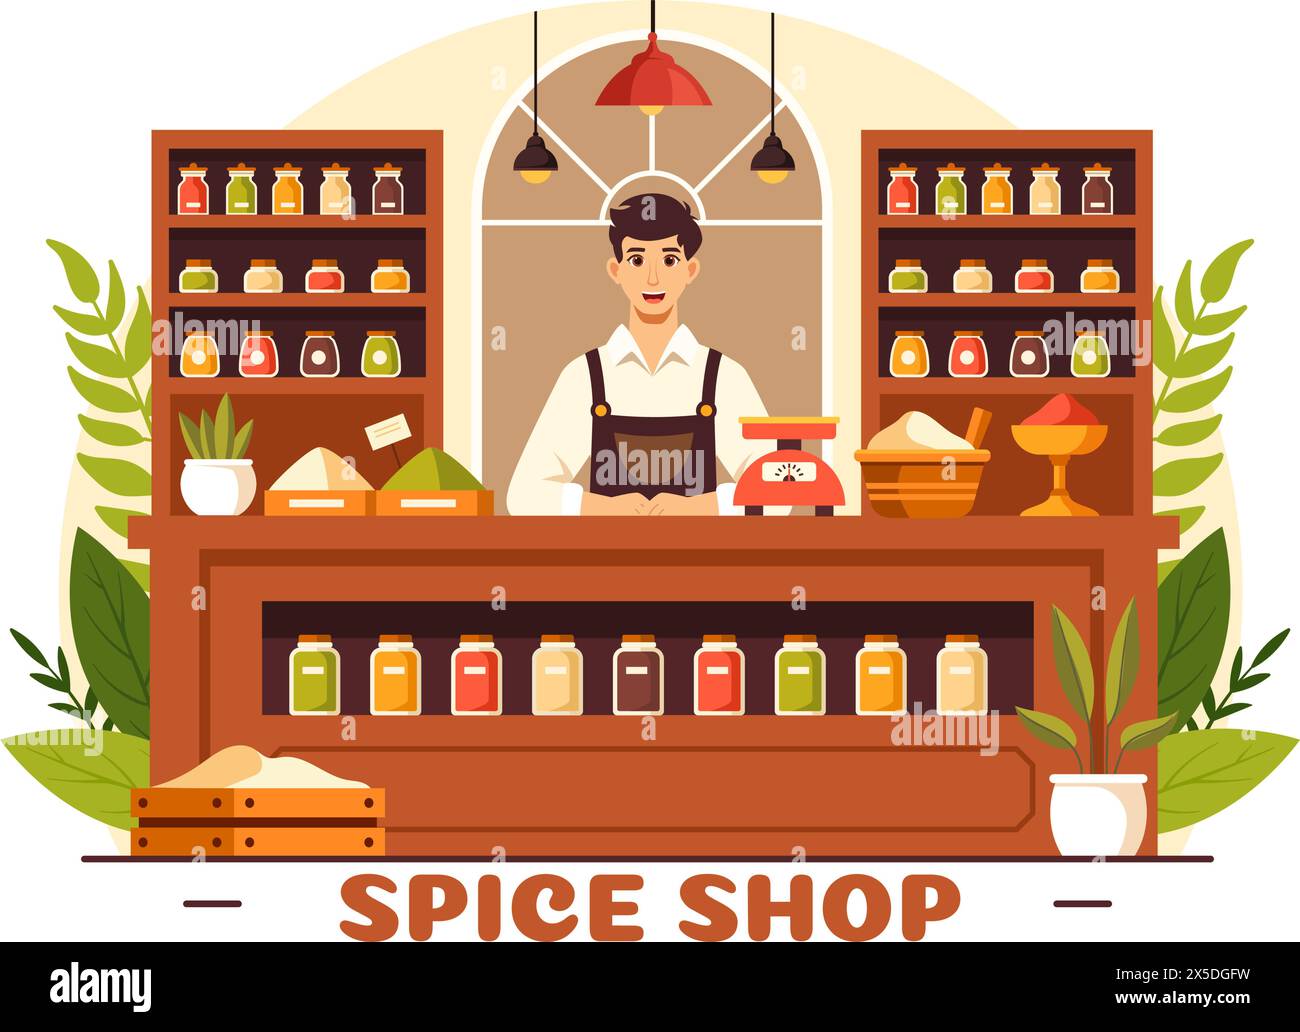 Gewürz-Shop-Vektor-Illustration mit verschiedenen heißen Saucen, Gewürzen, exotischen frischen Gewürzen und traditionellen Kräutern im flachen Zeichentrickhintergrund Stock Vektor